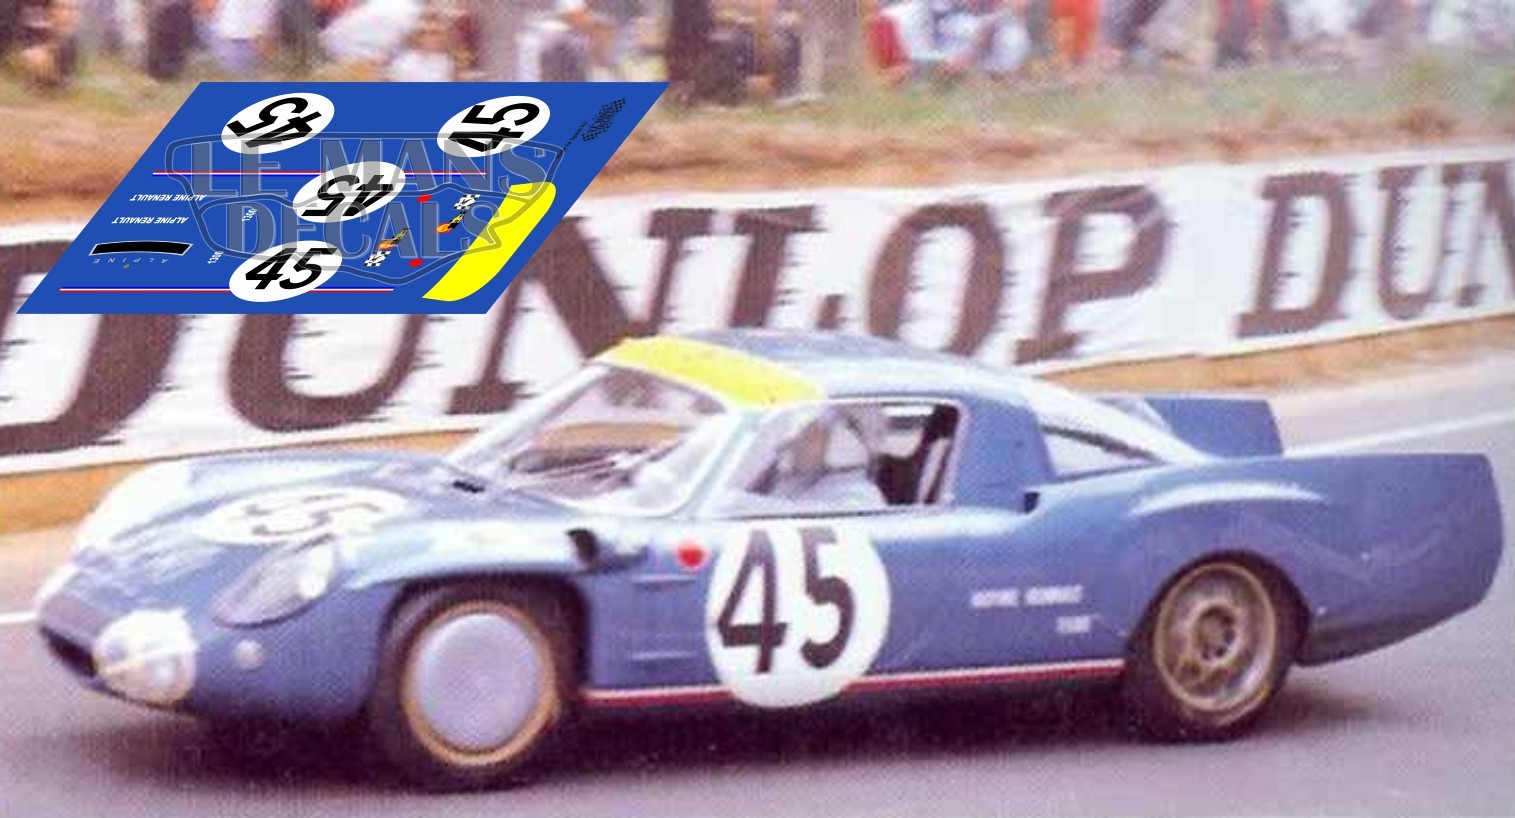 Calcas Alpine A210 Le Mans 1967 1:32 1:24 1:43 1:18 64 87 slot decals 